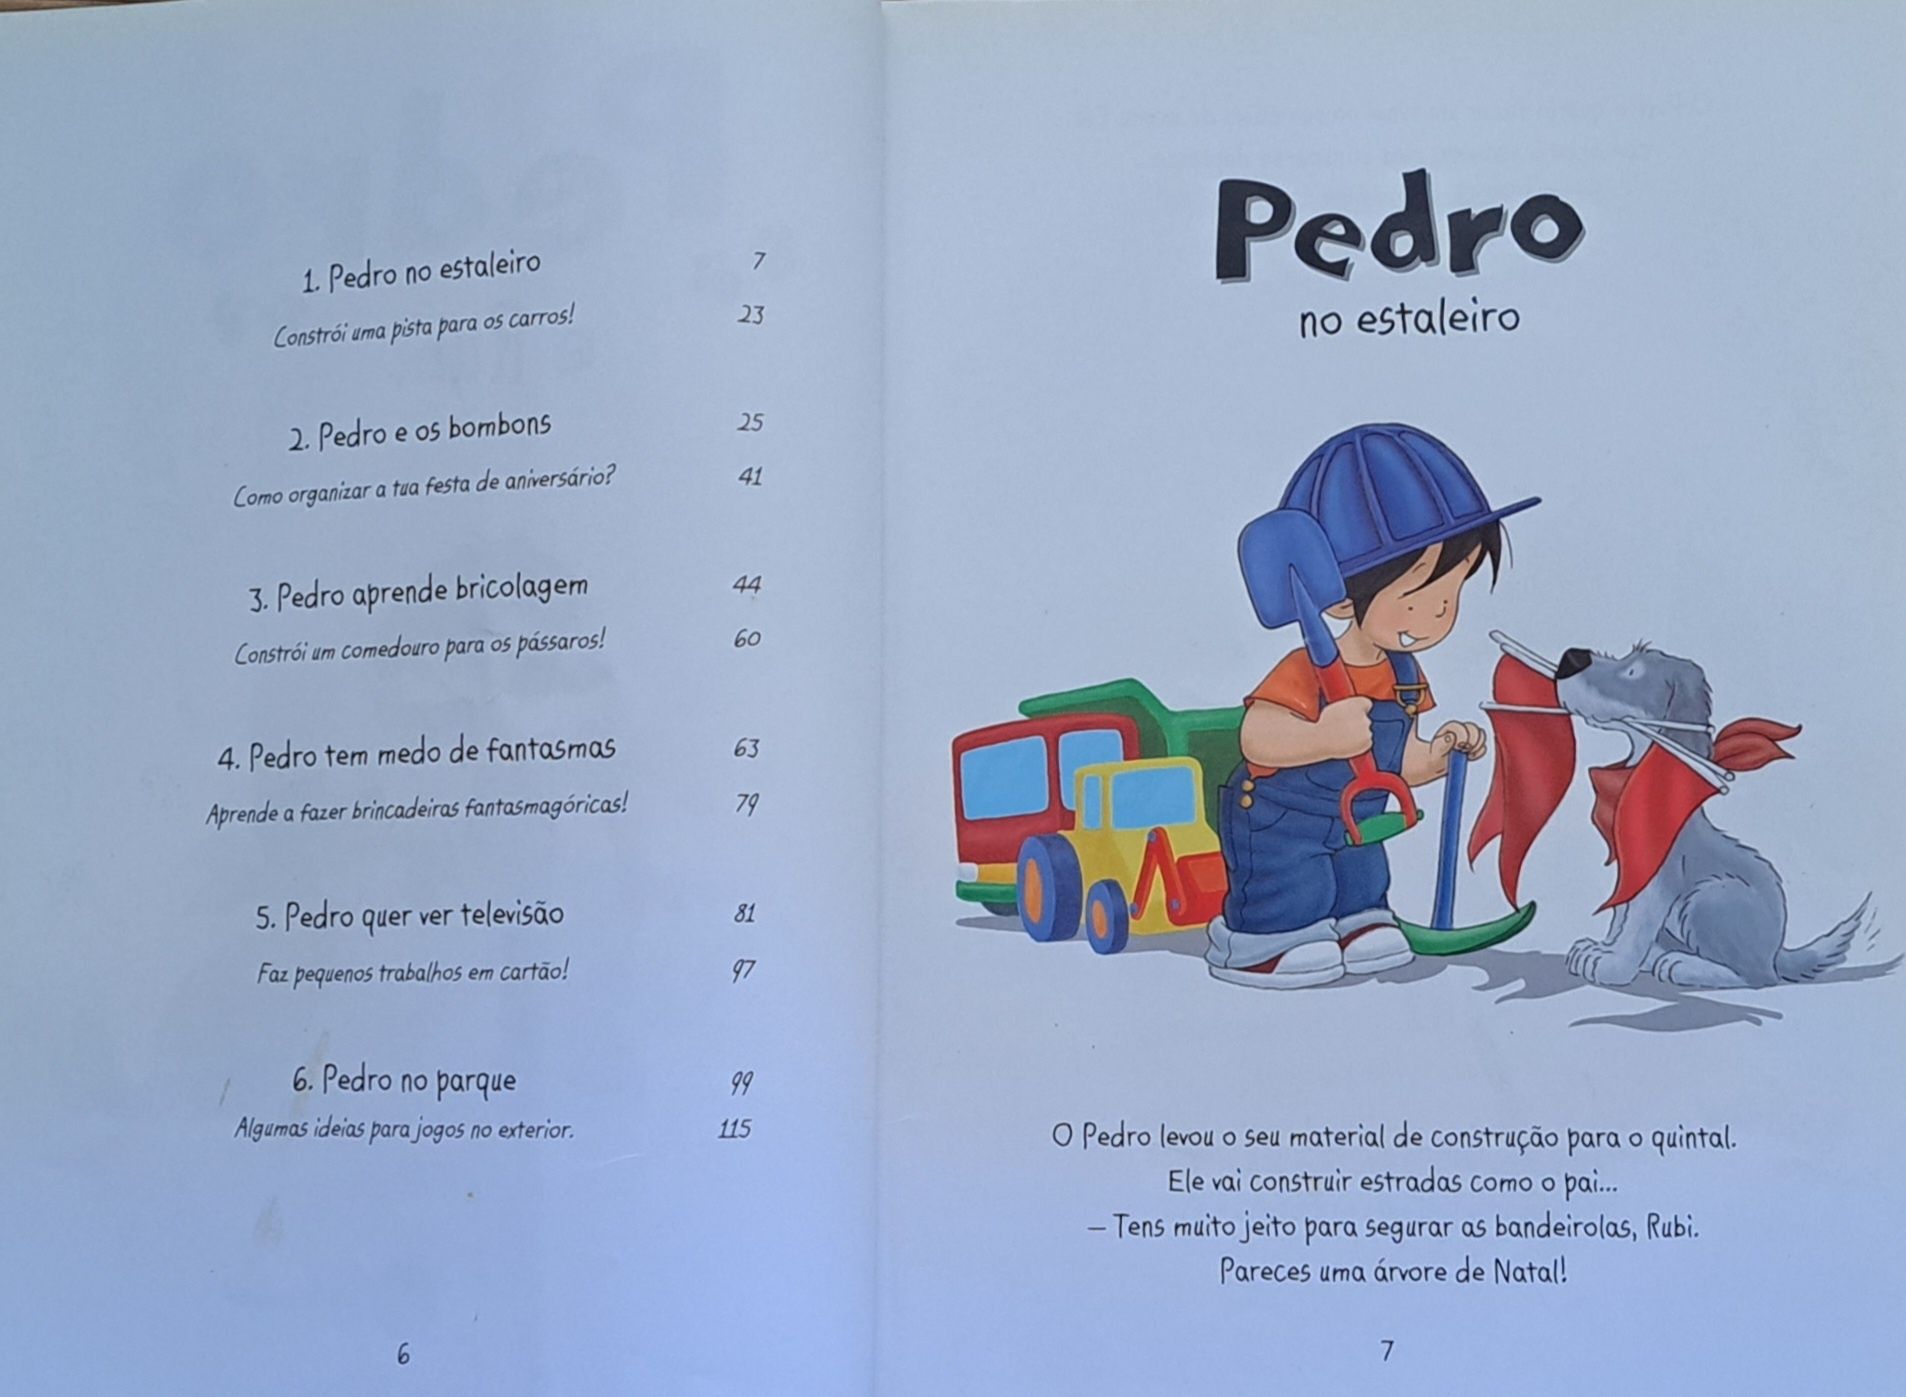 Pedro e Rubi. Livro infanto juvenil com 6 histórias